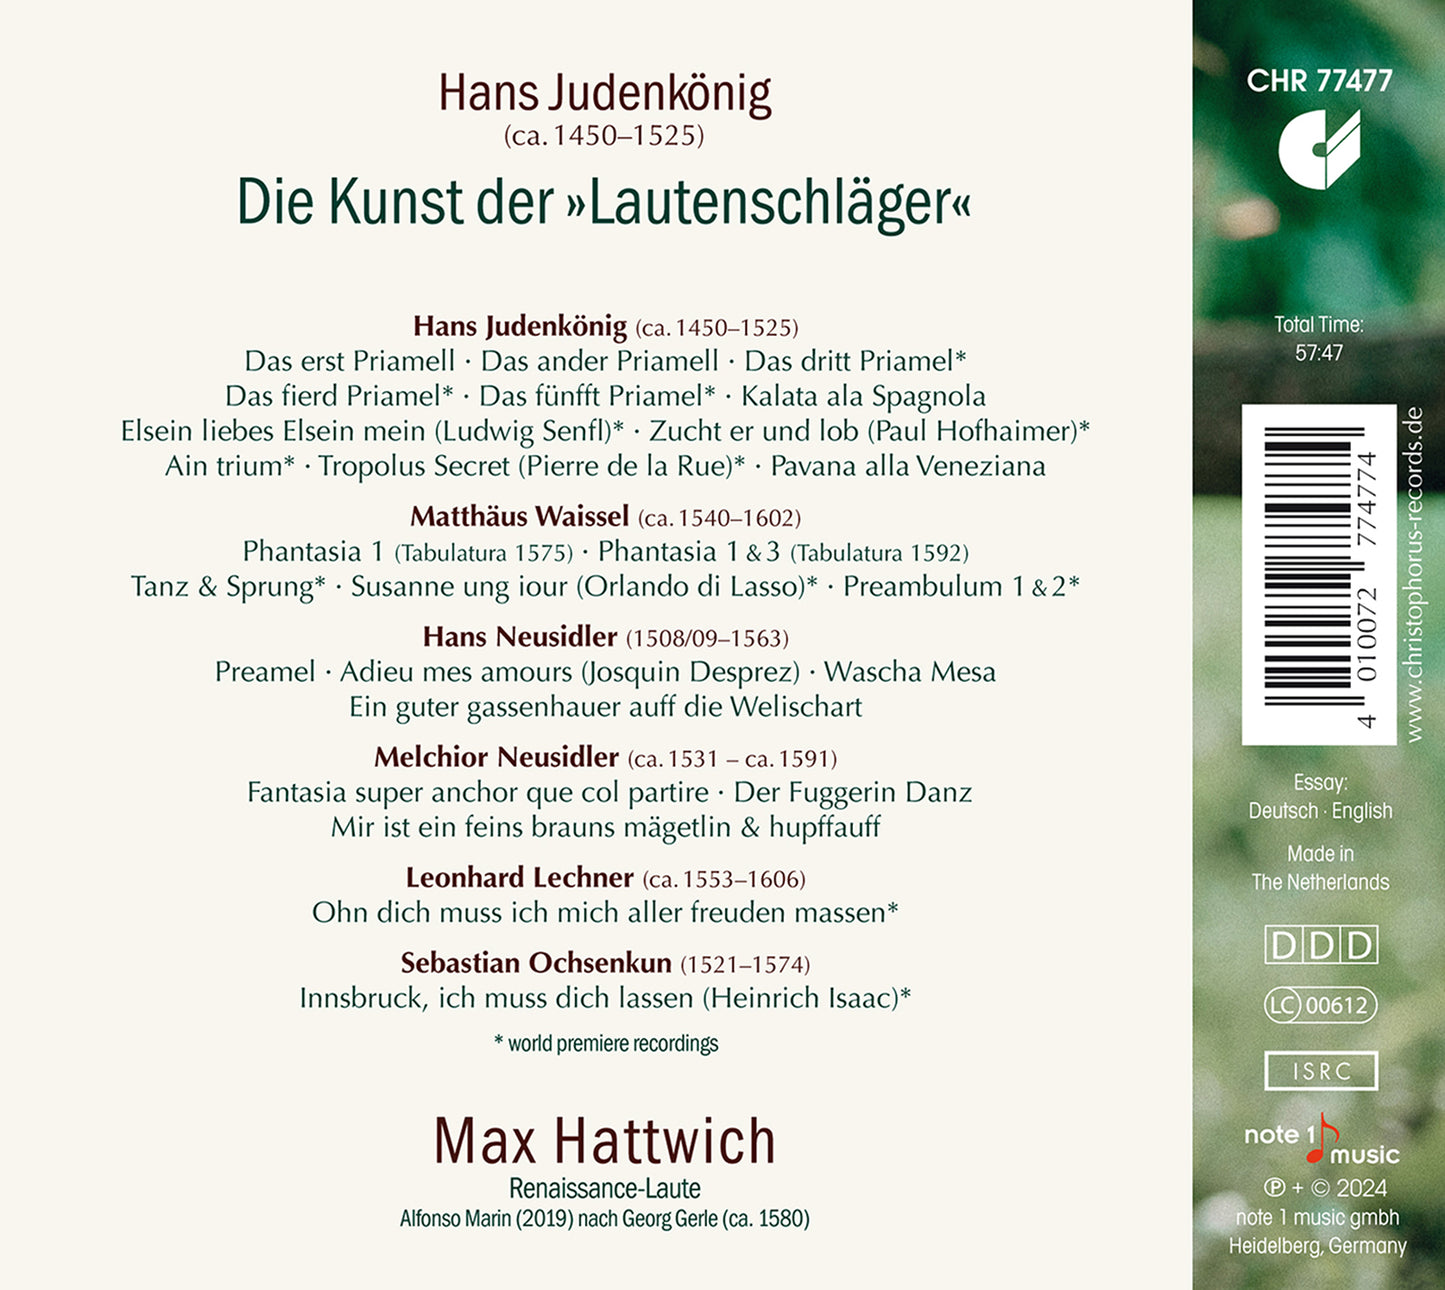 Hans Judenkönig: The Art of Lute / Boudevin, Wieners, Hattwich